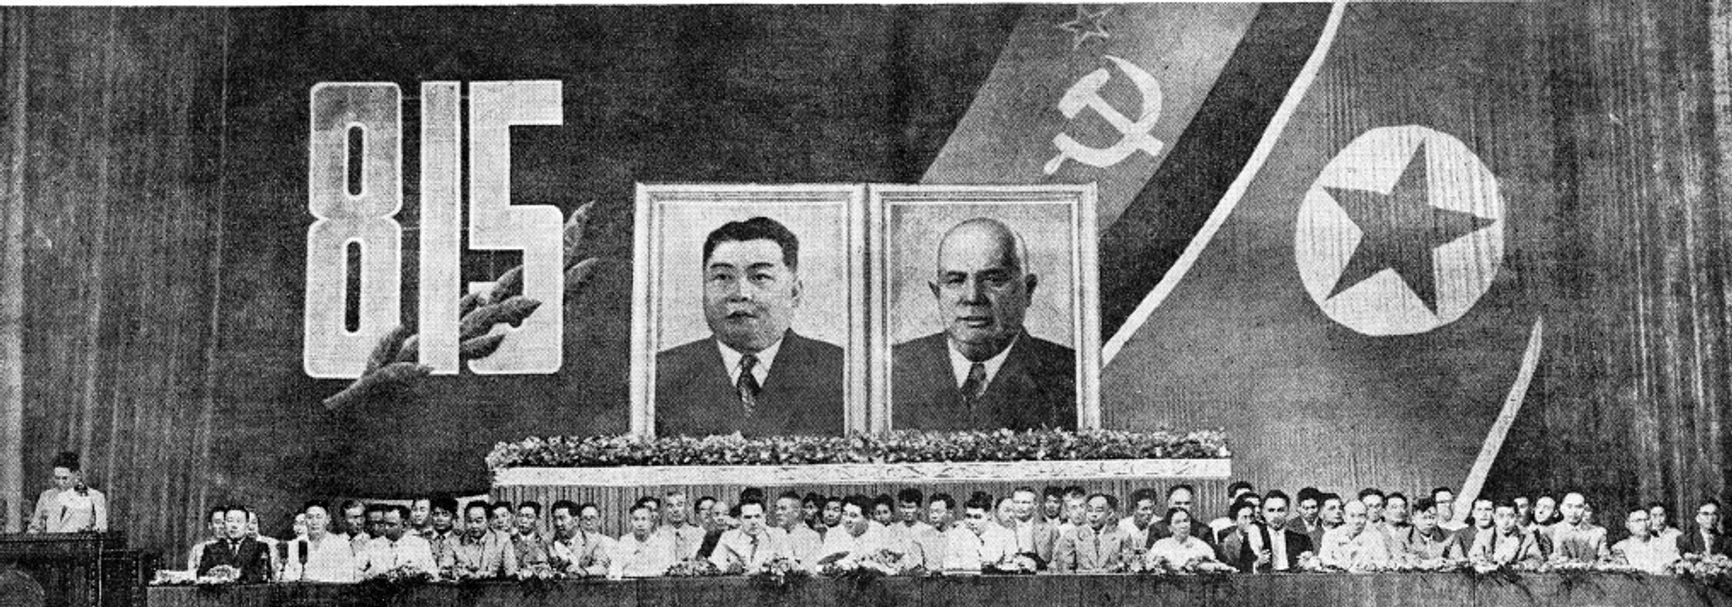 15 августа 1961 года, празднование 16-й годовщины объявления Японией о капитуляции. На трибуне — портреты Ким Ир Сена и Хрущёва. В нынешней КНДР любые фотографии вождя или его портрета вместе с «ревизионистом Хрущёвым» запрещены. Источник: «Нодон синмун»